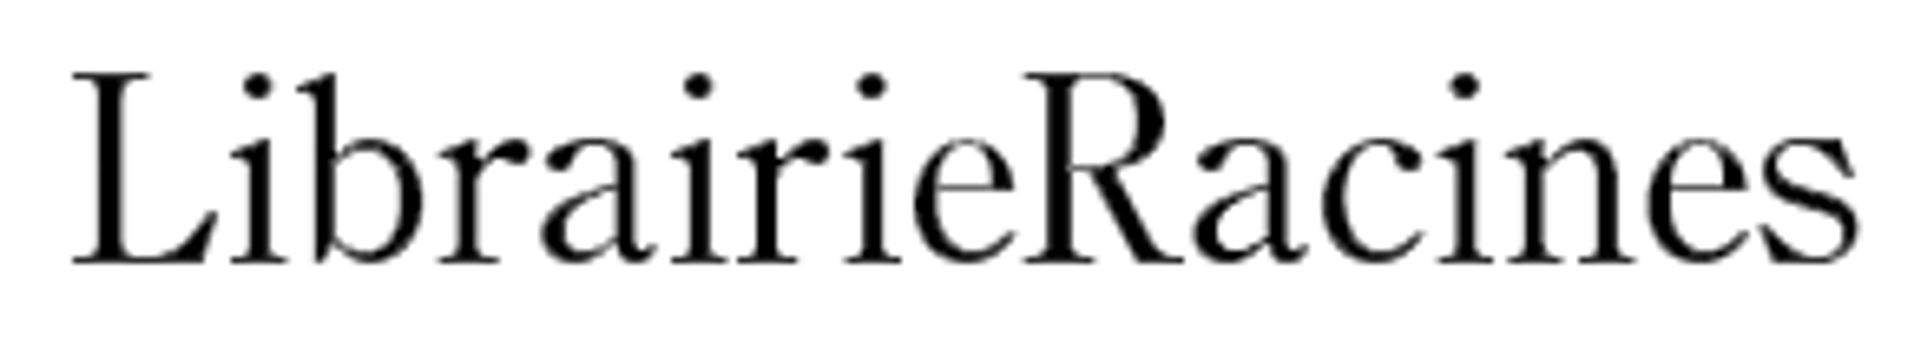 RACINES logo de circulaire